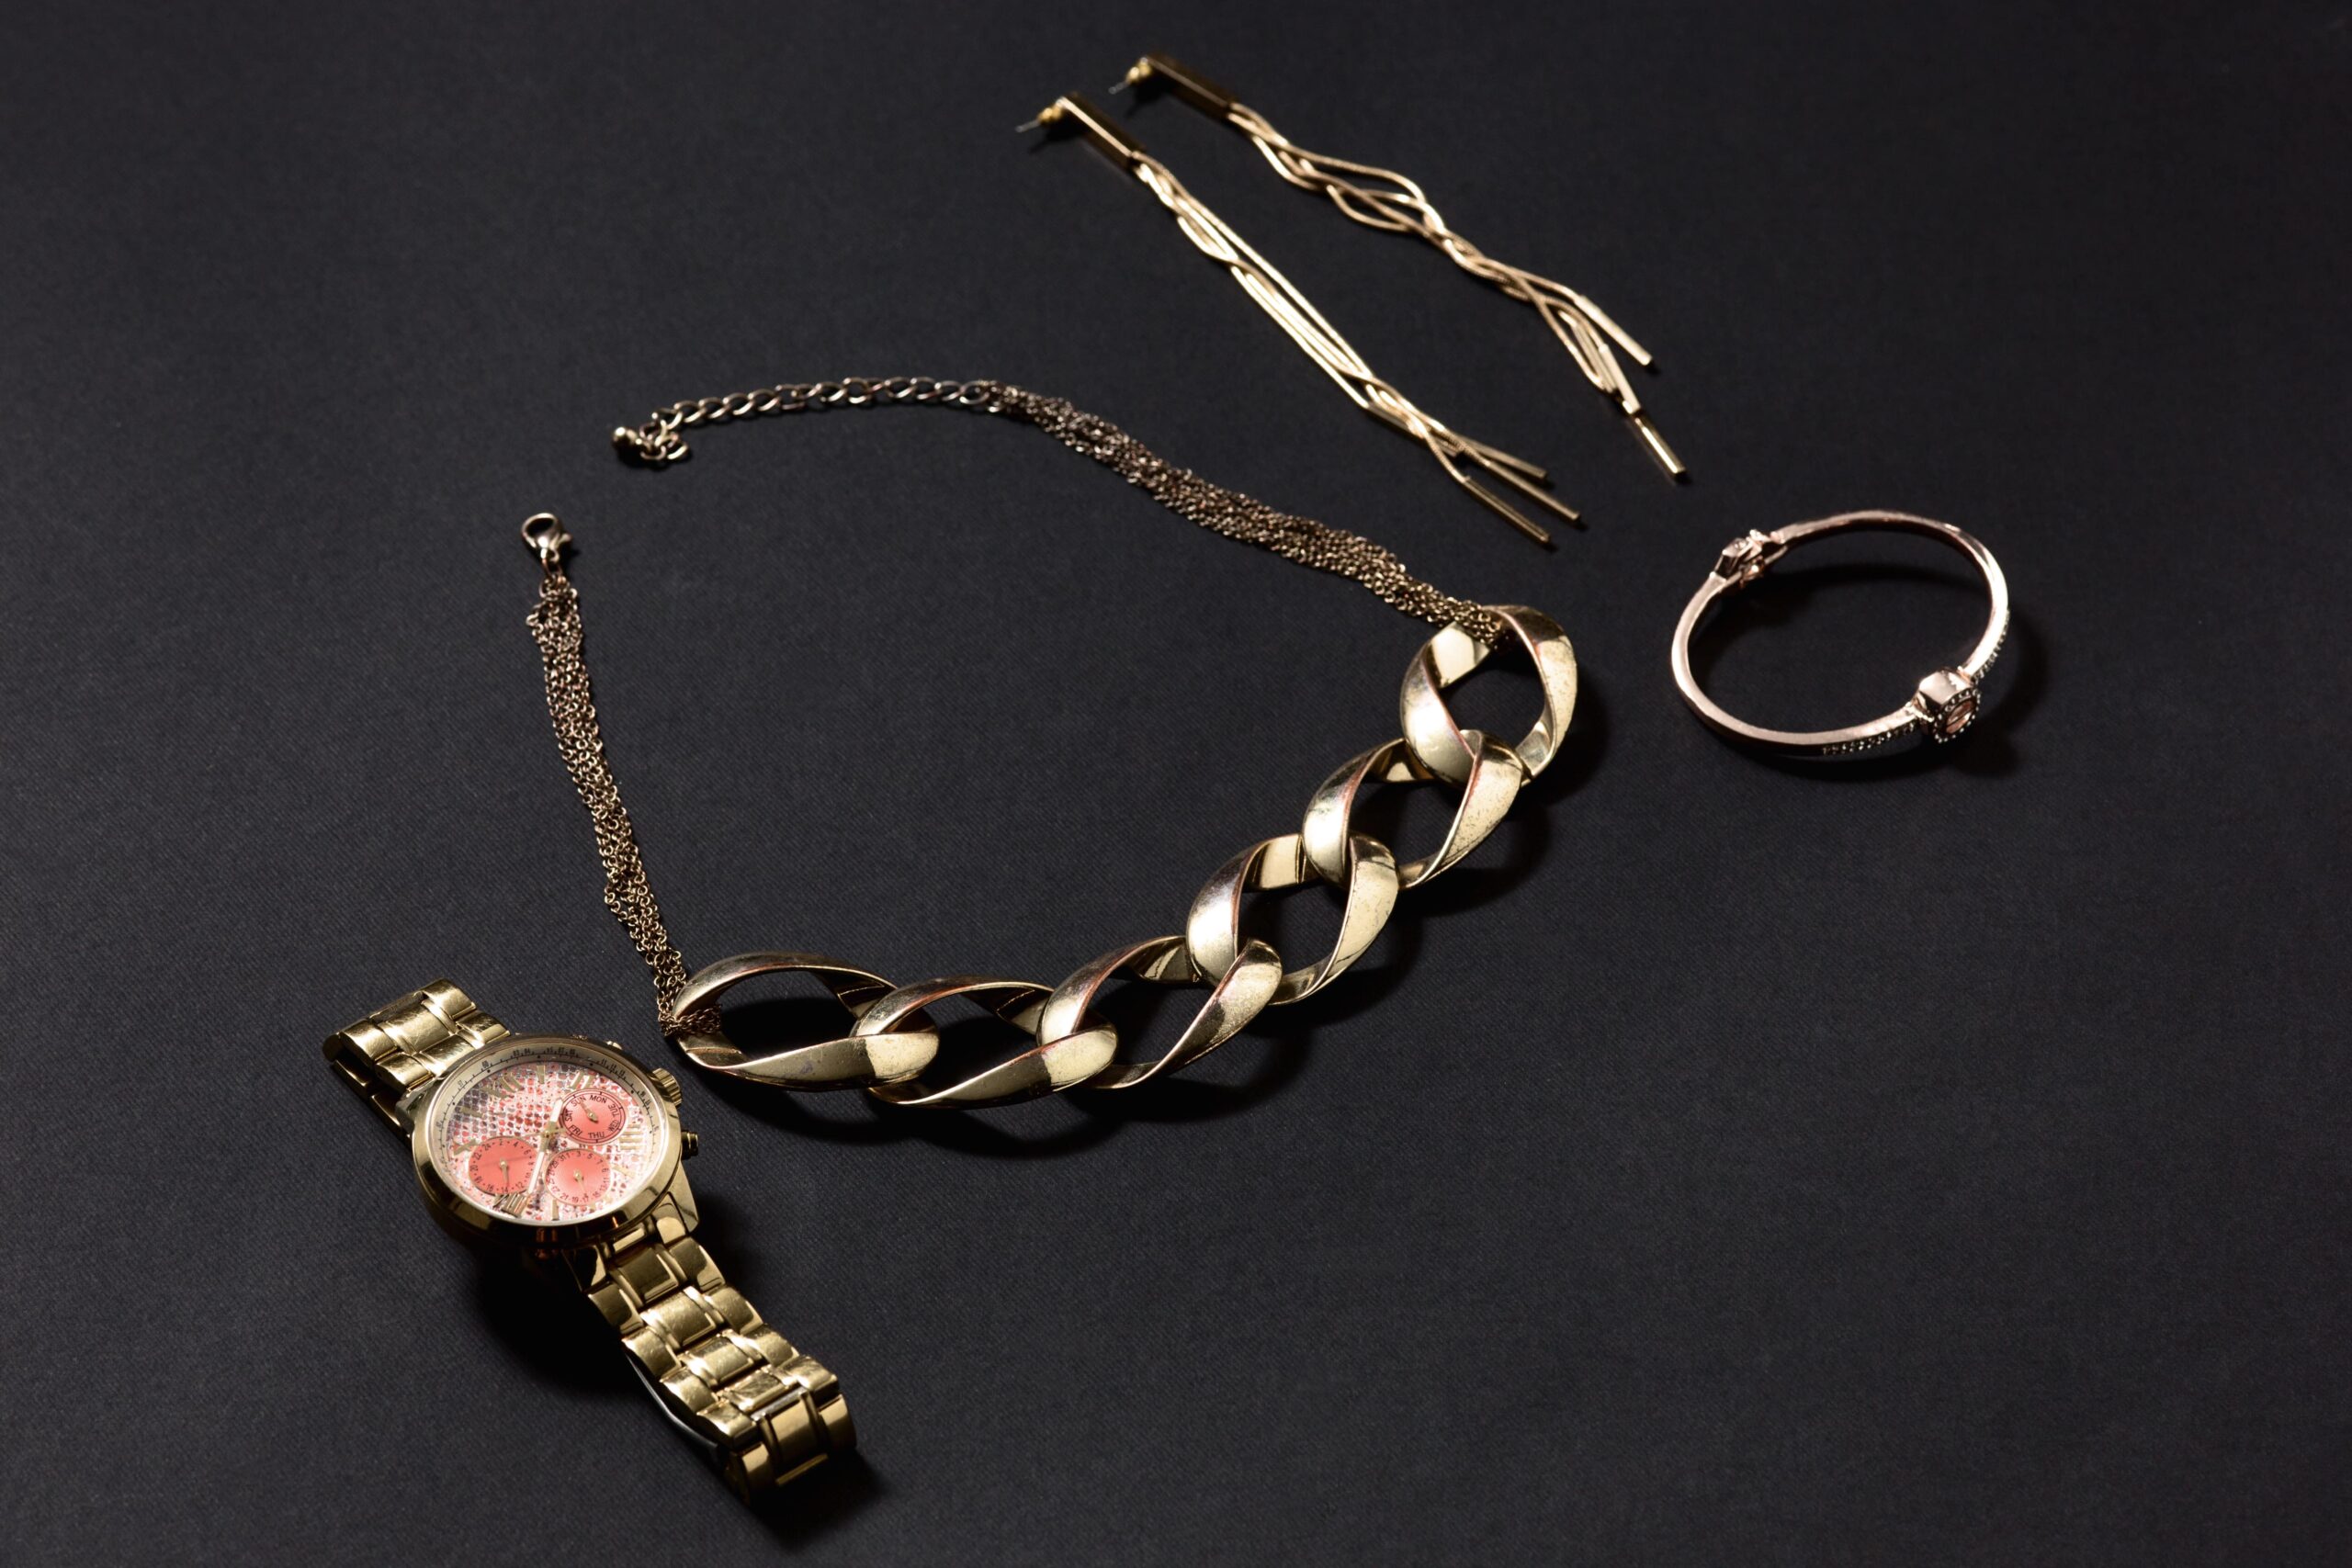 Neues juwelier Minitials: luxuriöse Accessoires für jeden Anlass